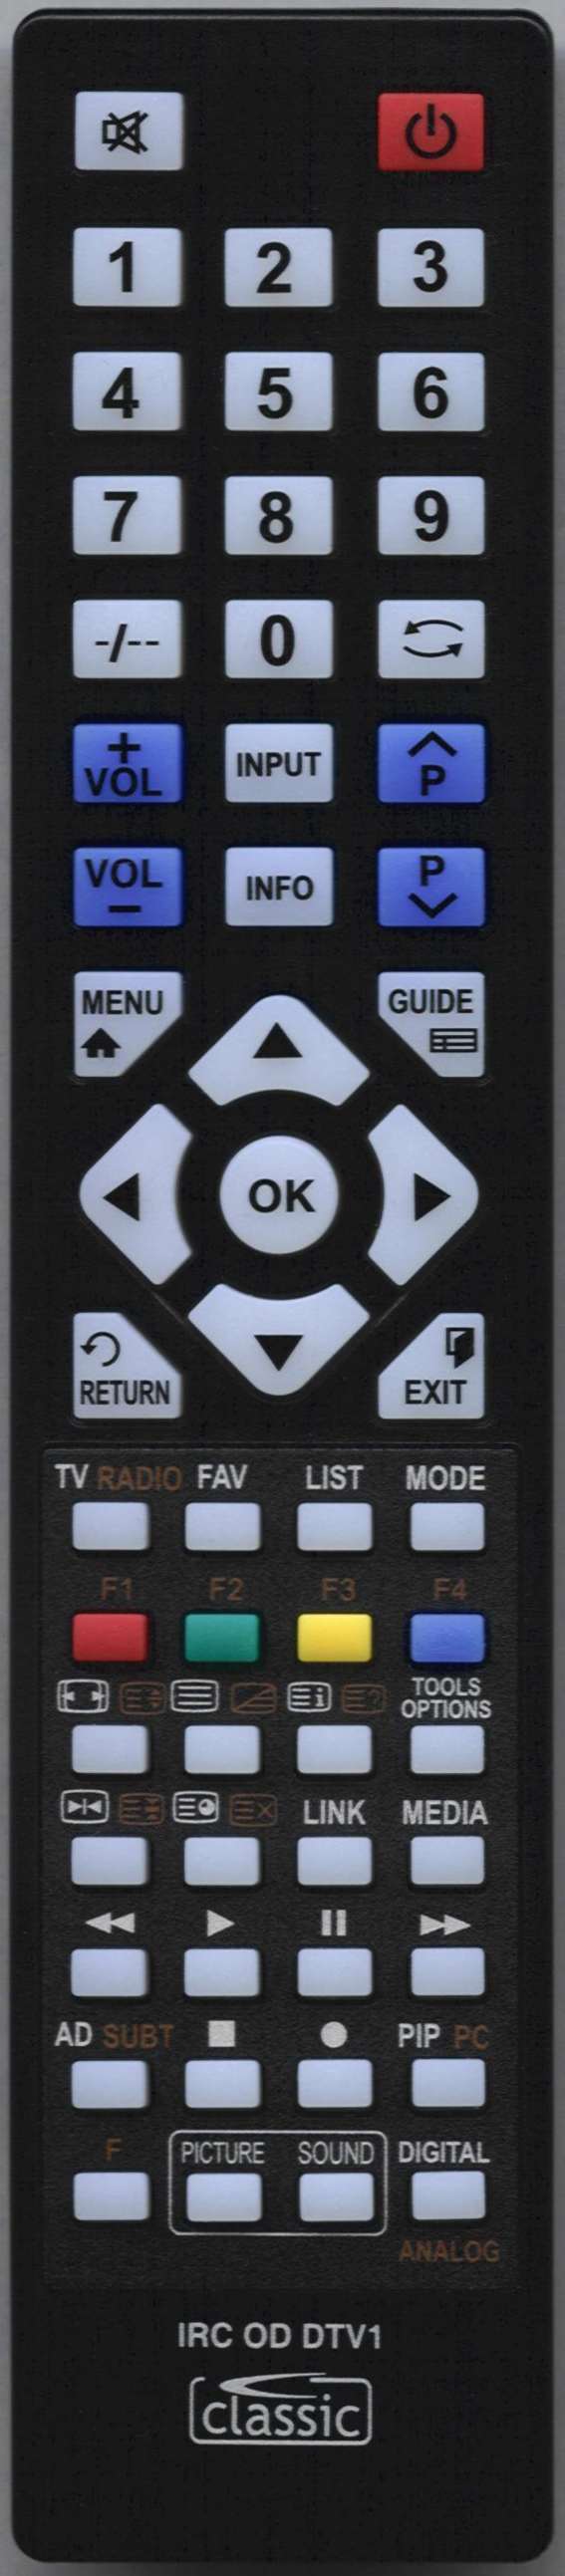 SEIKI LE-32GY16-T3 DVD Remote Control Alternative 